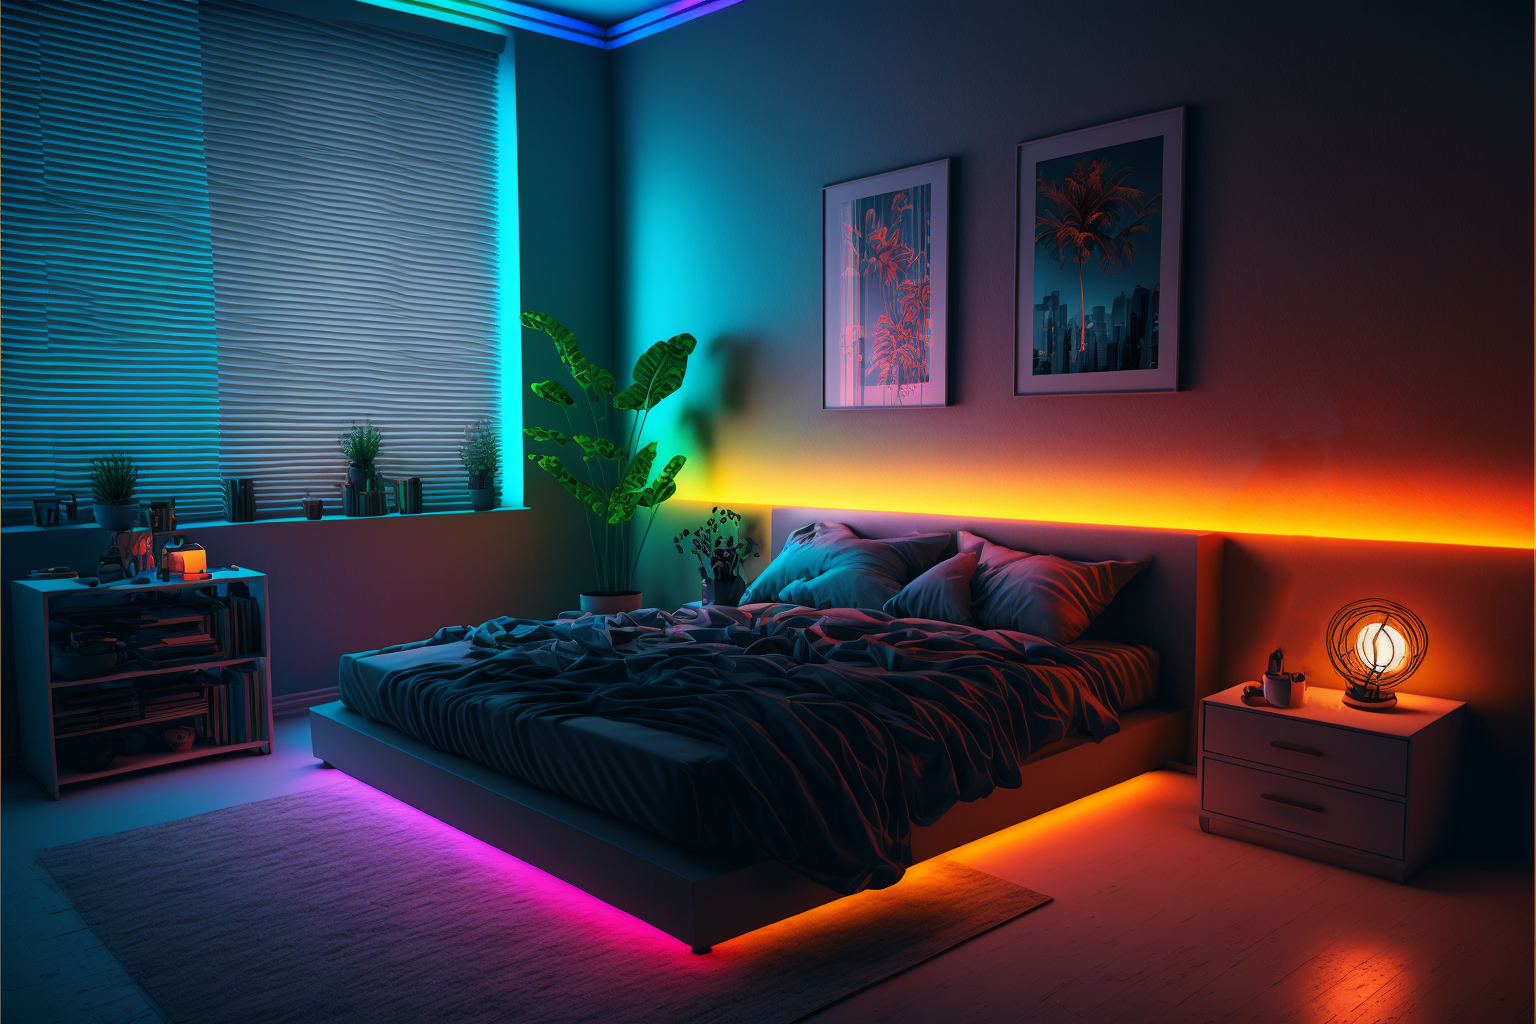 Installer un ruban LED dans sa chambre ! Dressing, lit et tête de lit